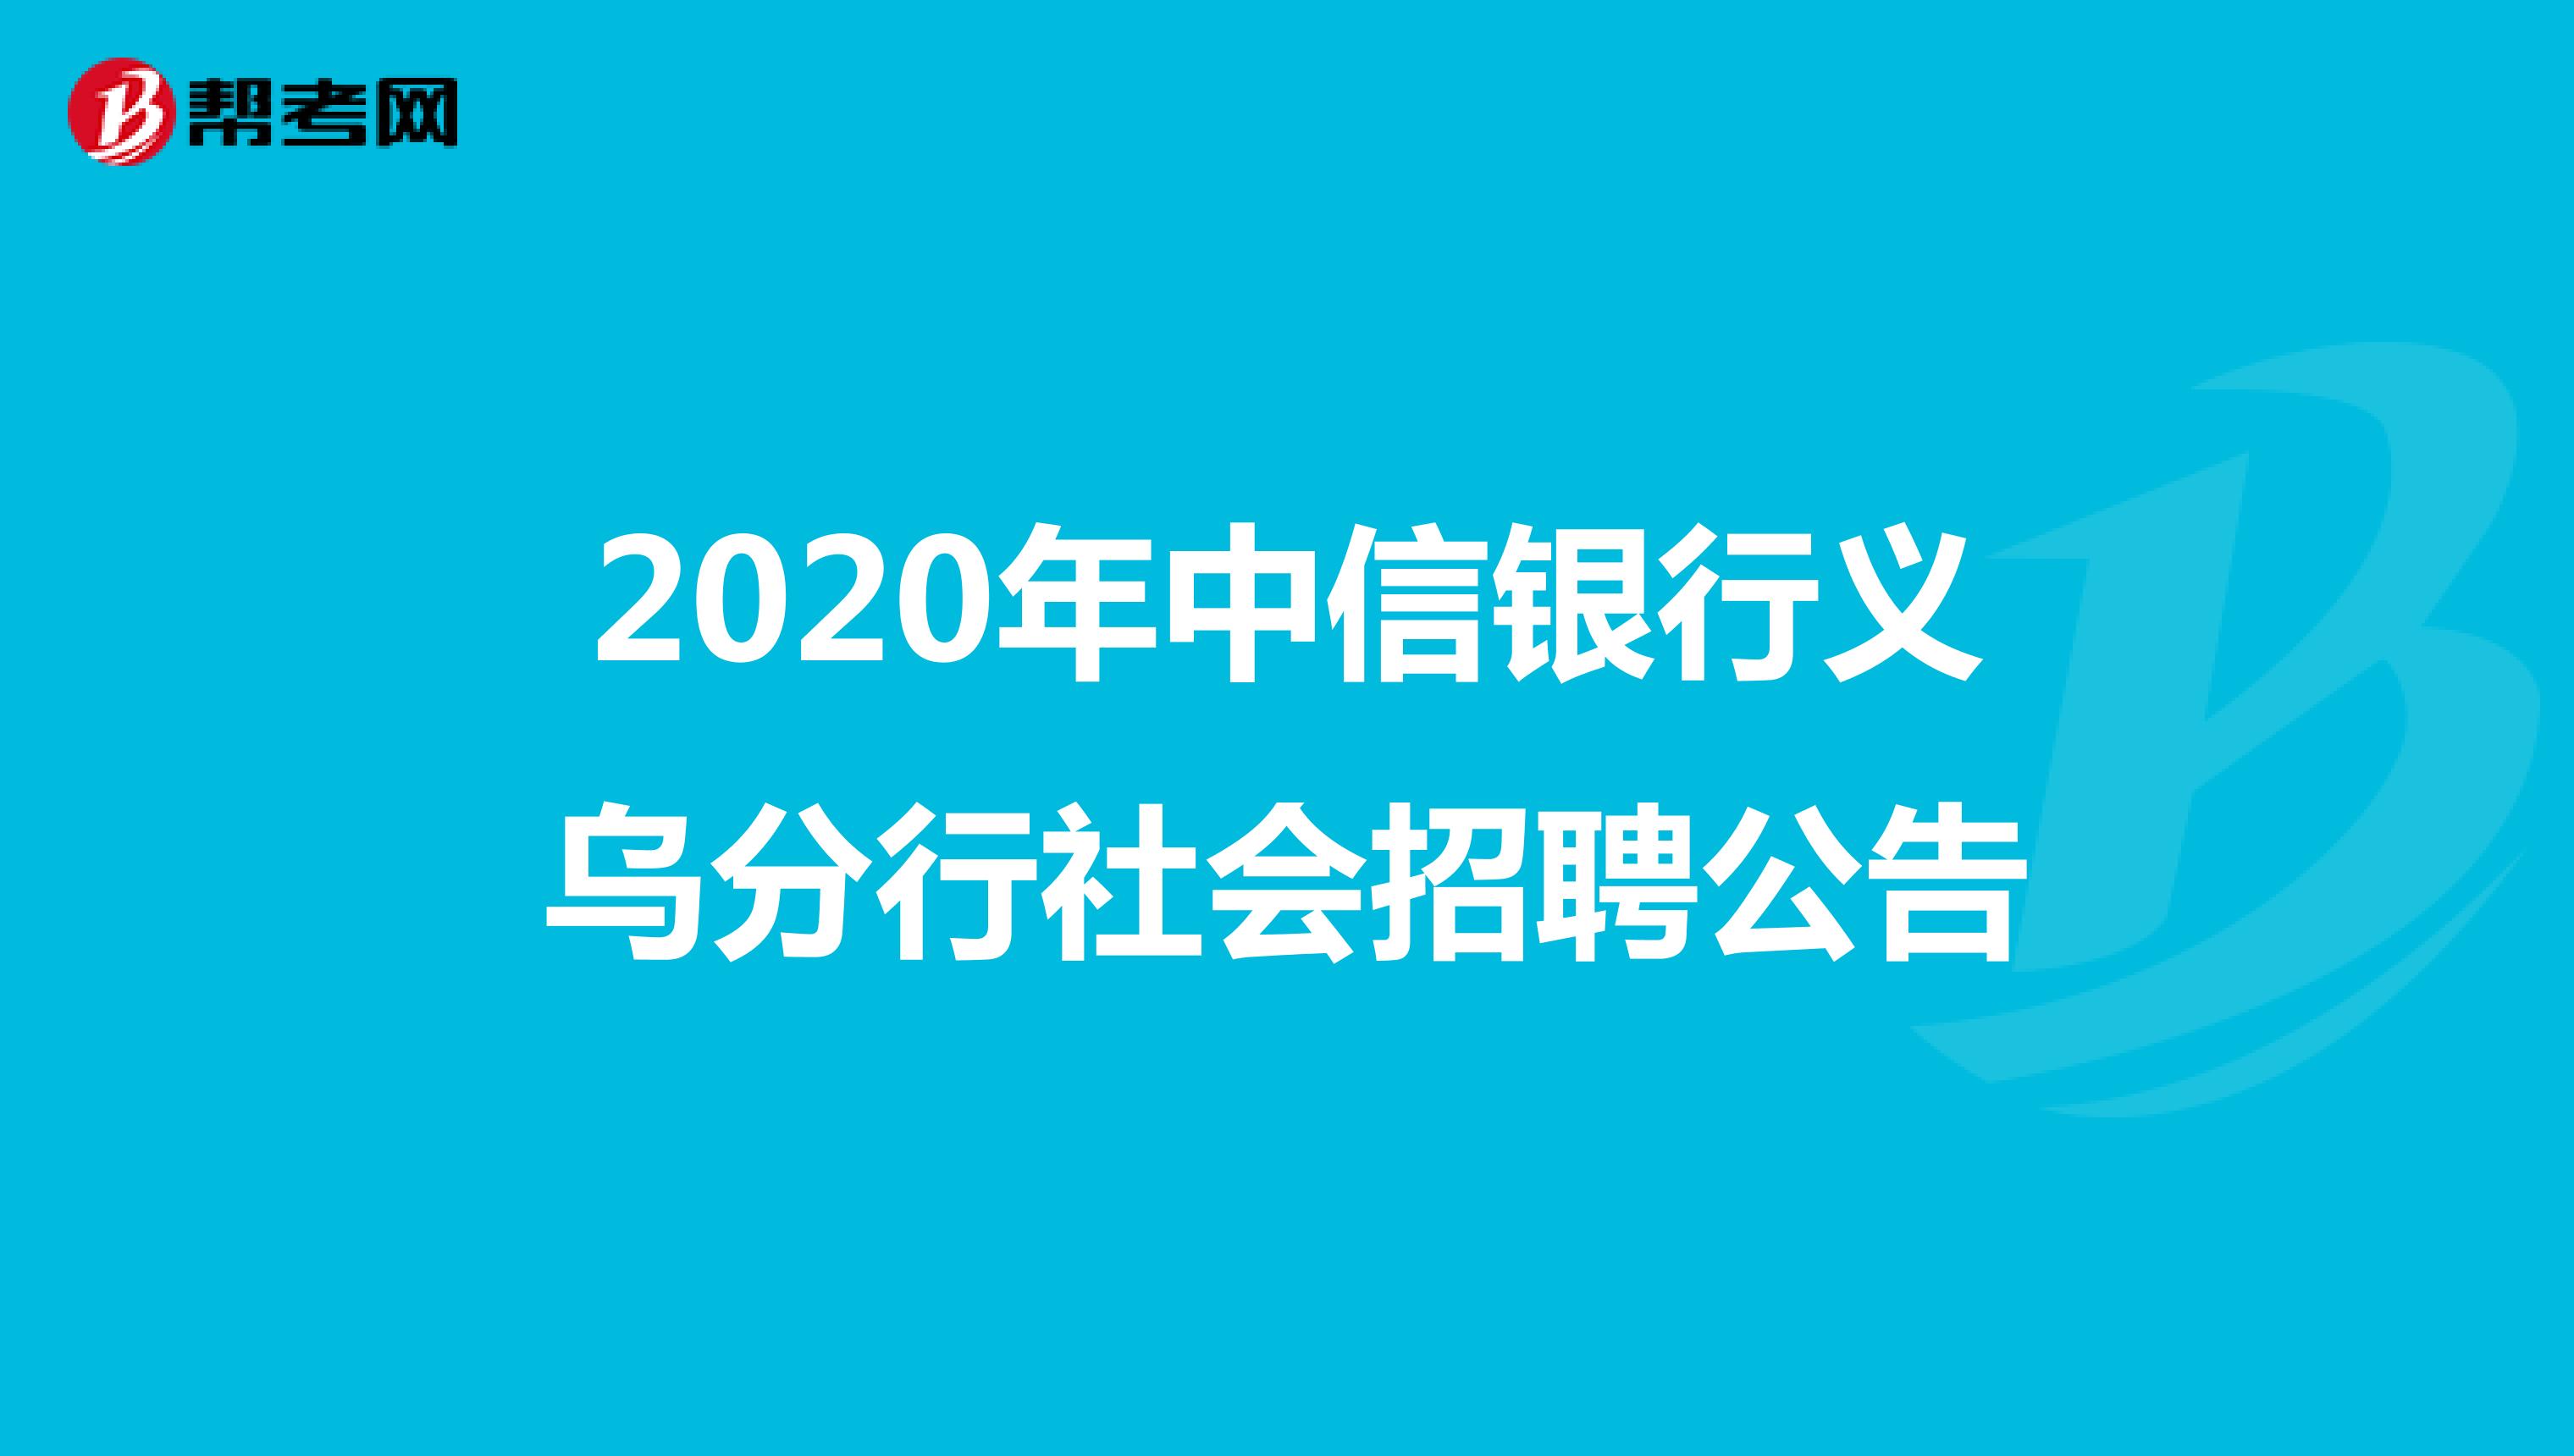 2020年中信银行义乌分行社会招聘公告